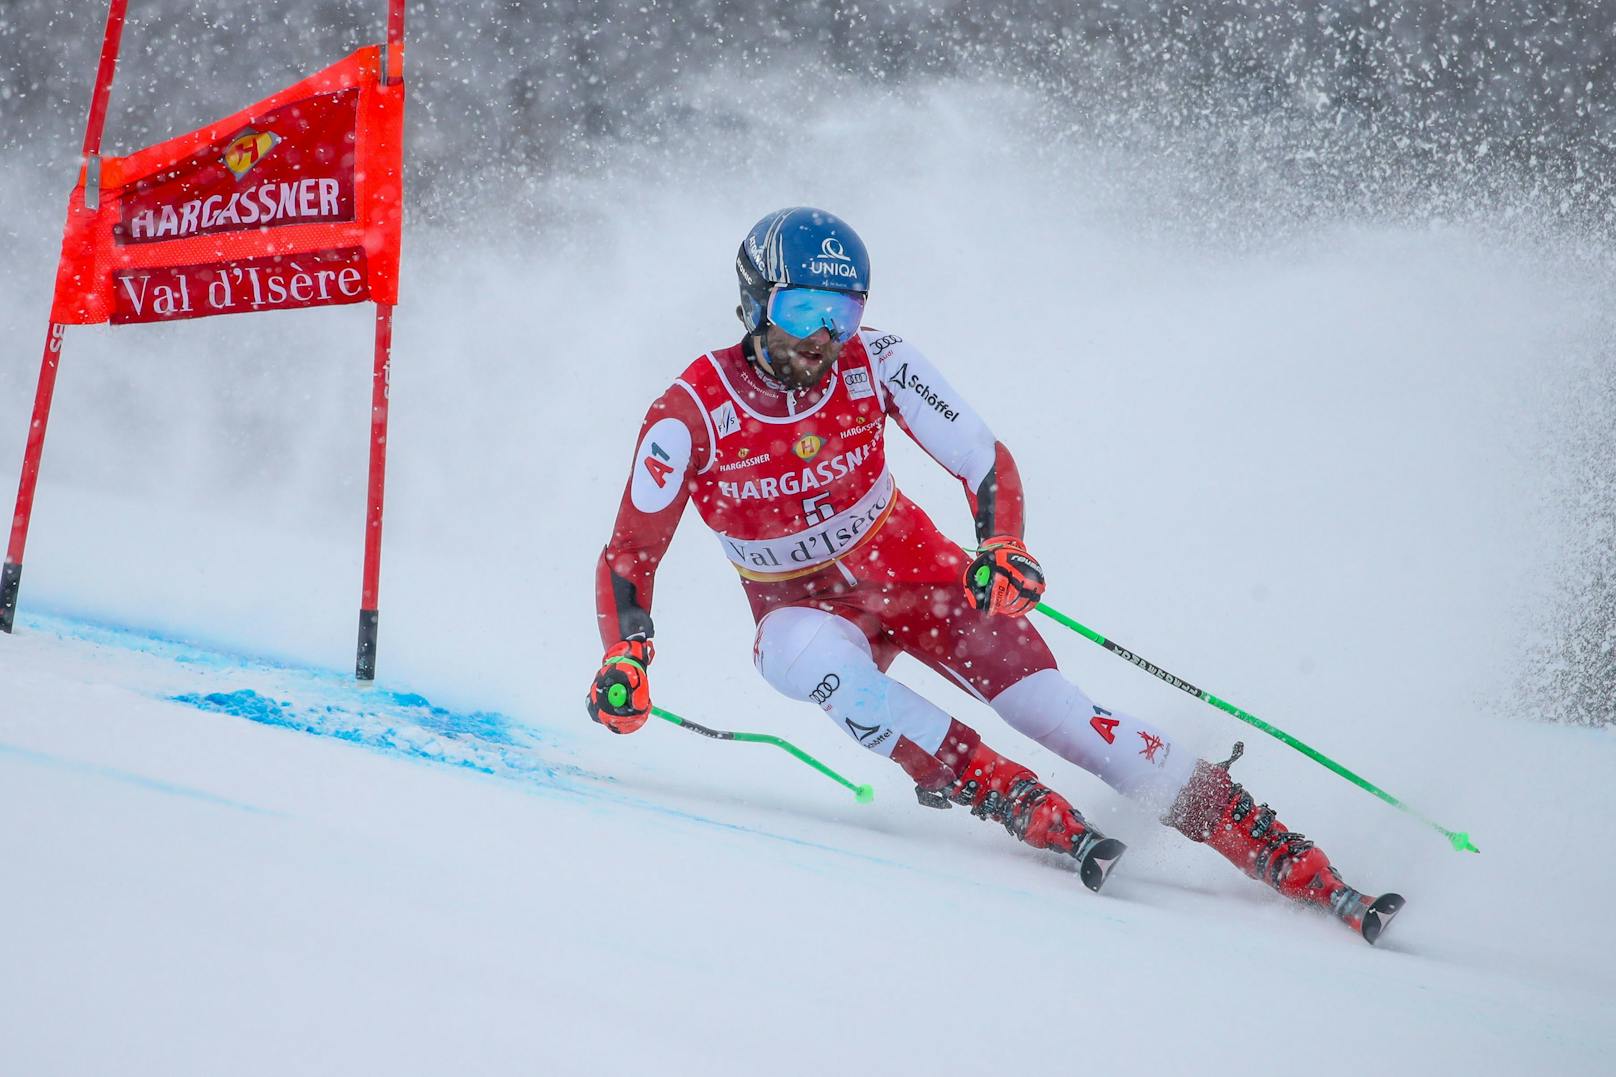 Das zweite Saisonrennen für die Ski-Stars endete wieder mit einem zweiten Platz für Marco Schwarz. Nur Marco Odermatt war beim Riesentorlauf in Val d'Isere nicht zu schlagen.